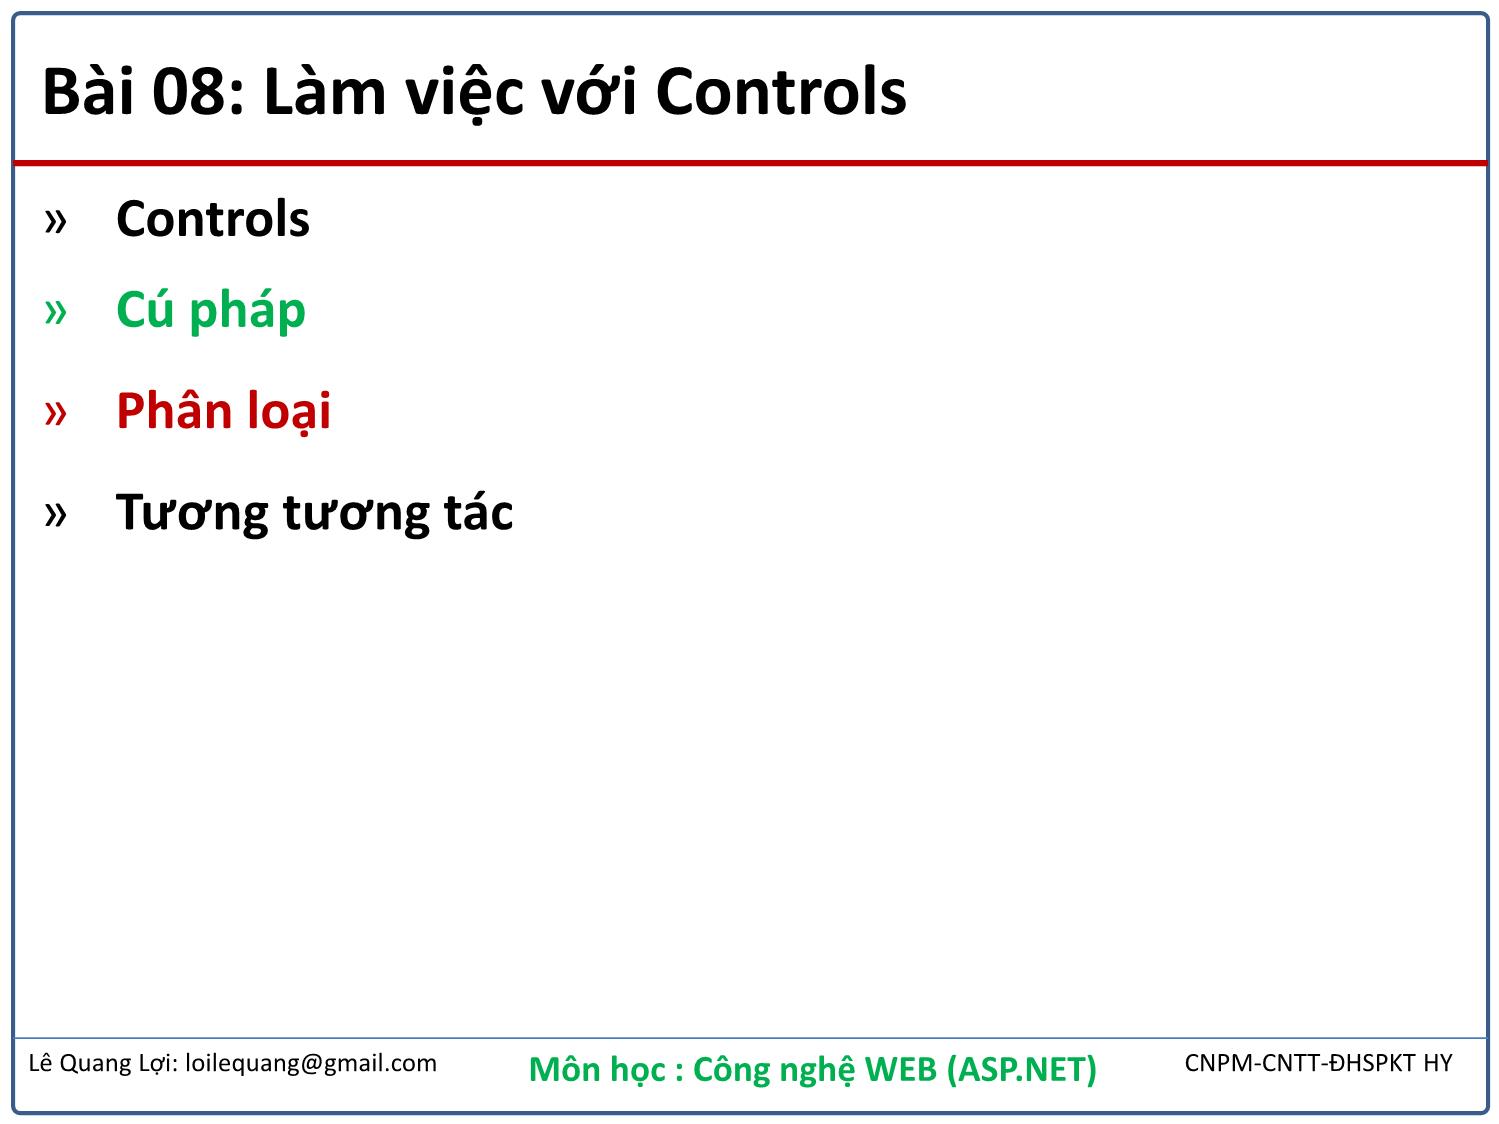 Bài giảng Công nghệ Web - Bài 8: Làm việc với Controls - Lê Quang Lợi trang 2